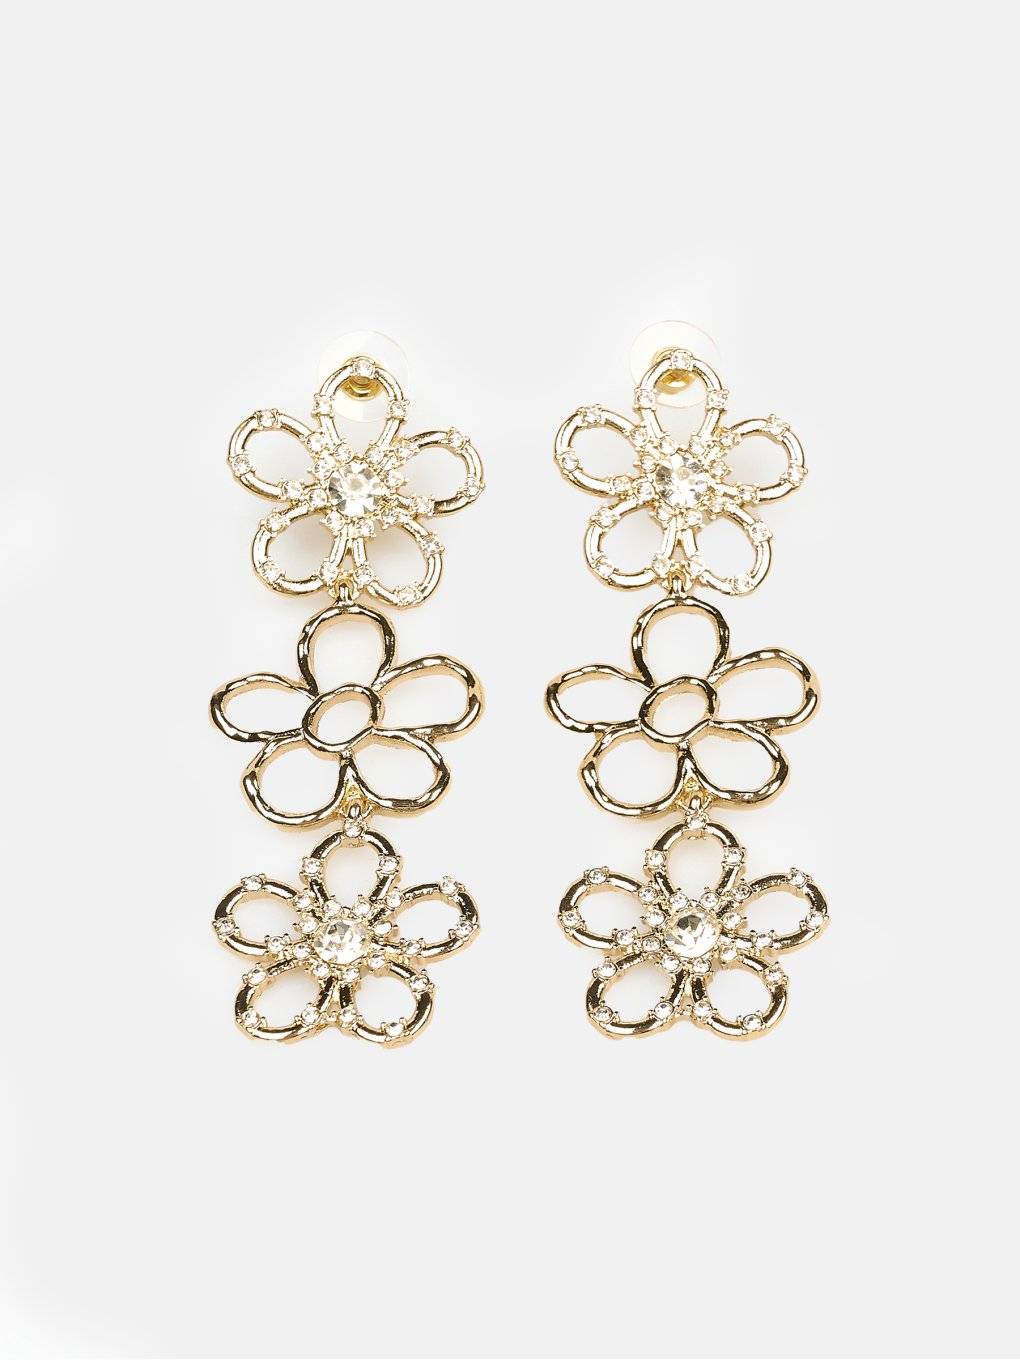 Long floral earrings